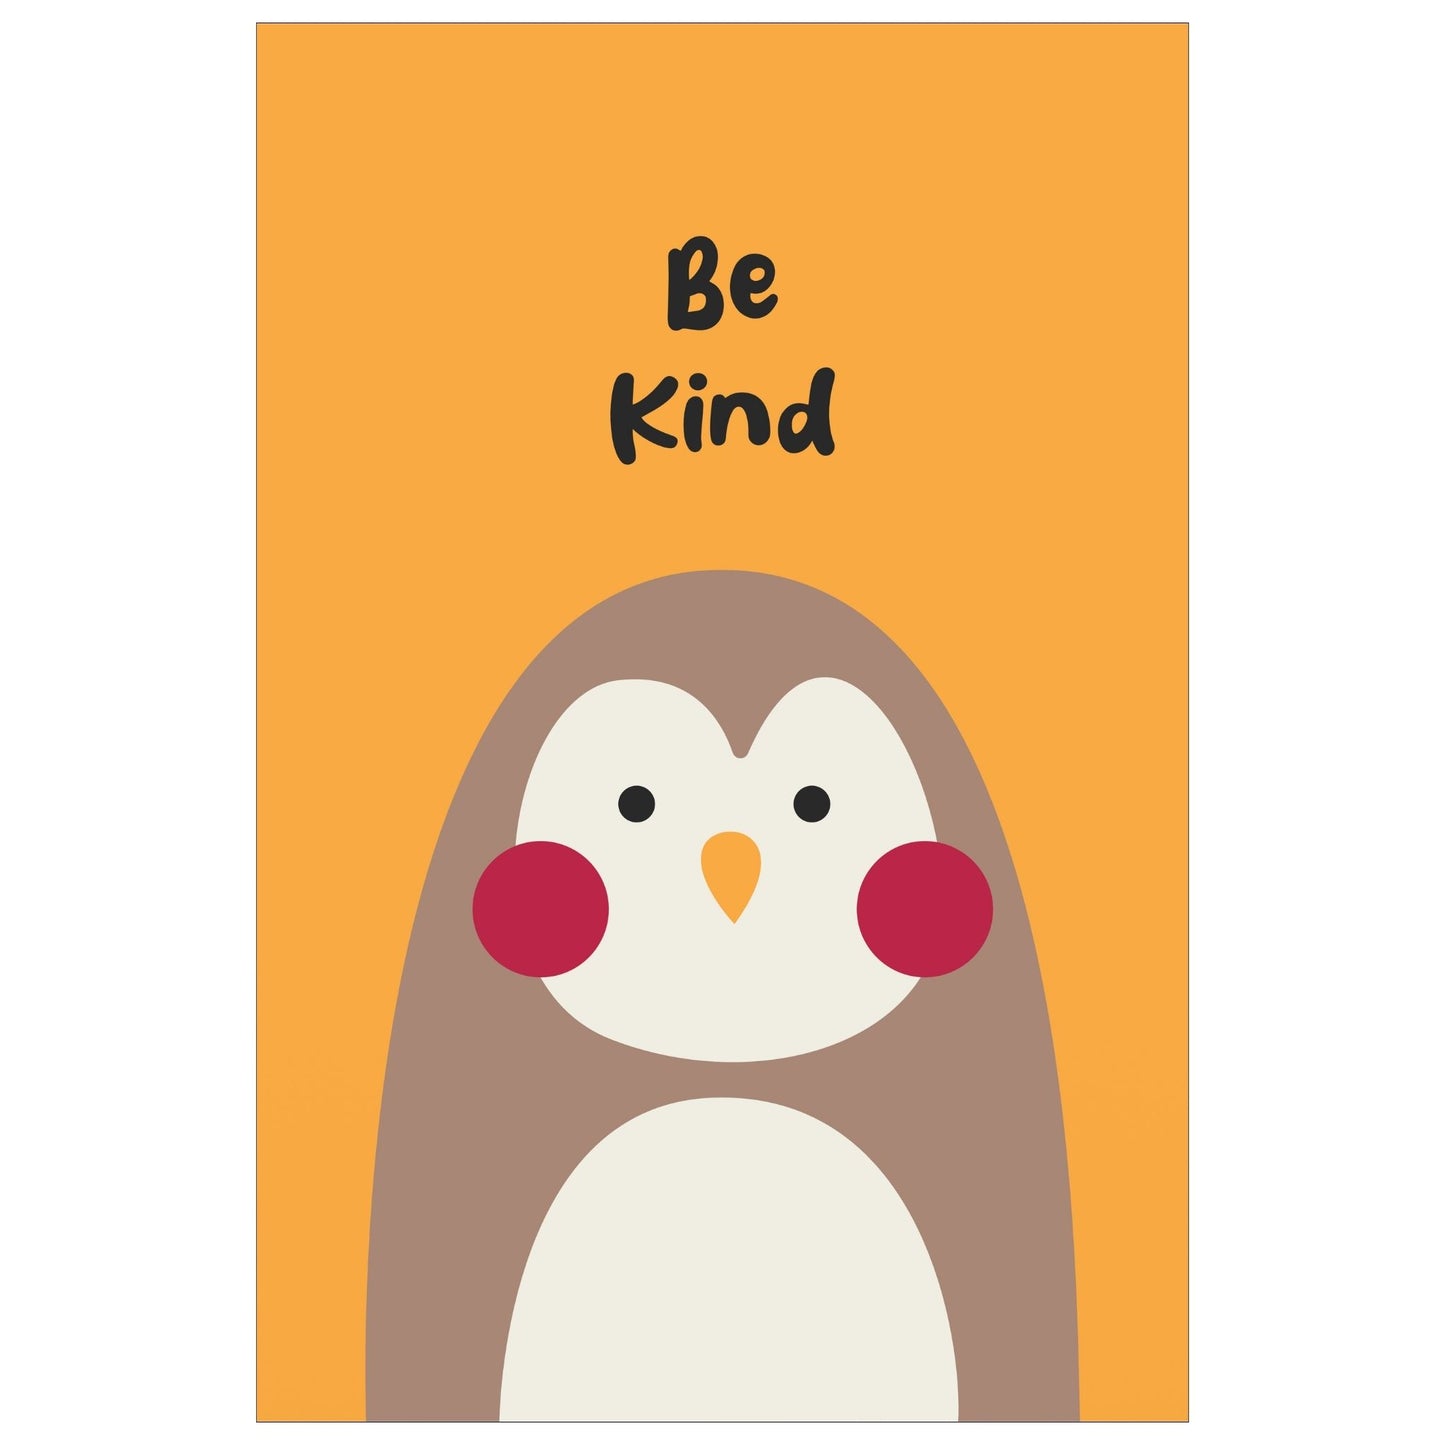 Cartoon Animal. Grafisk plakat for barnerommet. Lys brun pingvin på oransje bakgrunn.  Tekst "Be kind"